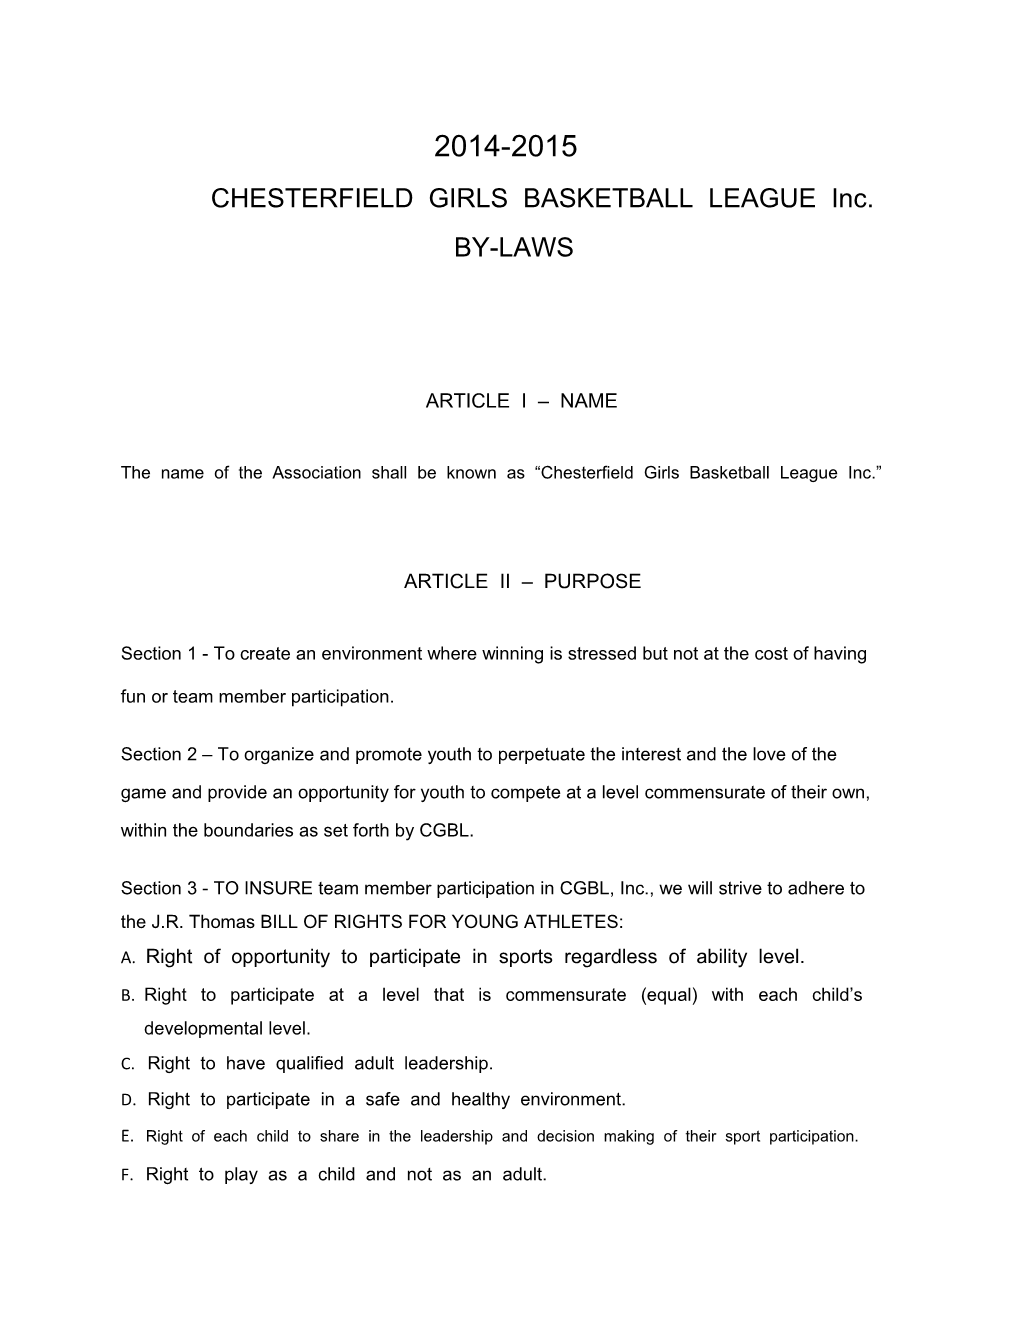 CHESTERFIELD GIRLS BASKETBALL LEAGUE Inc